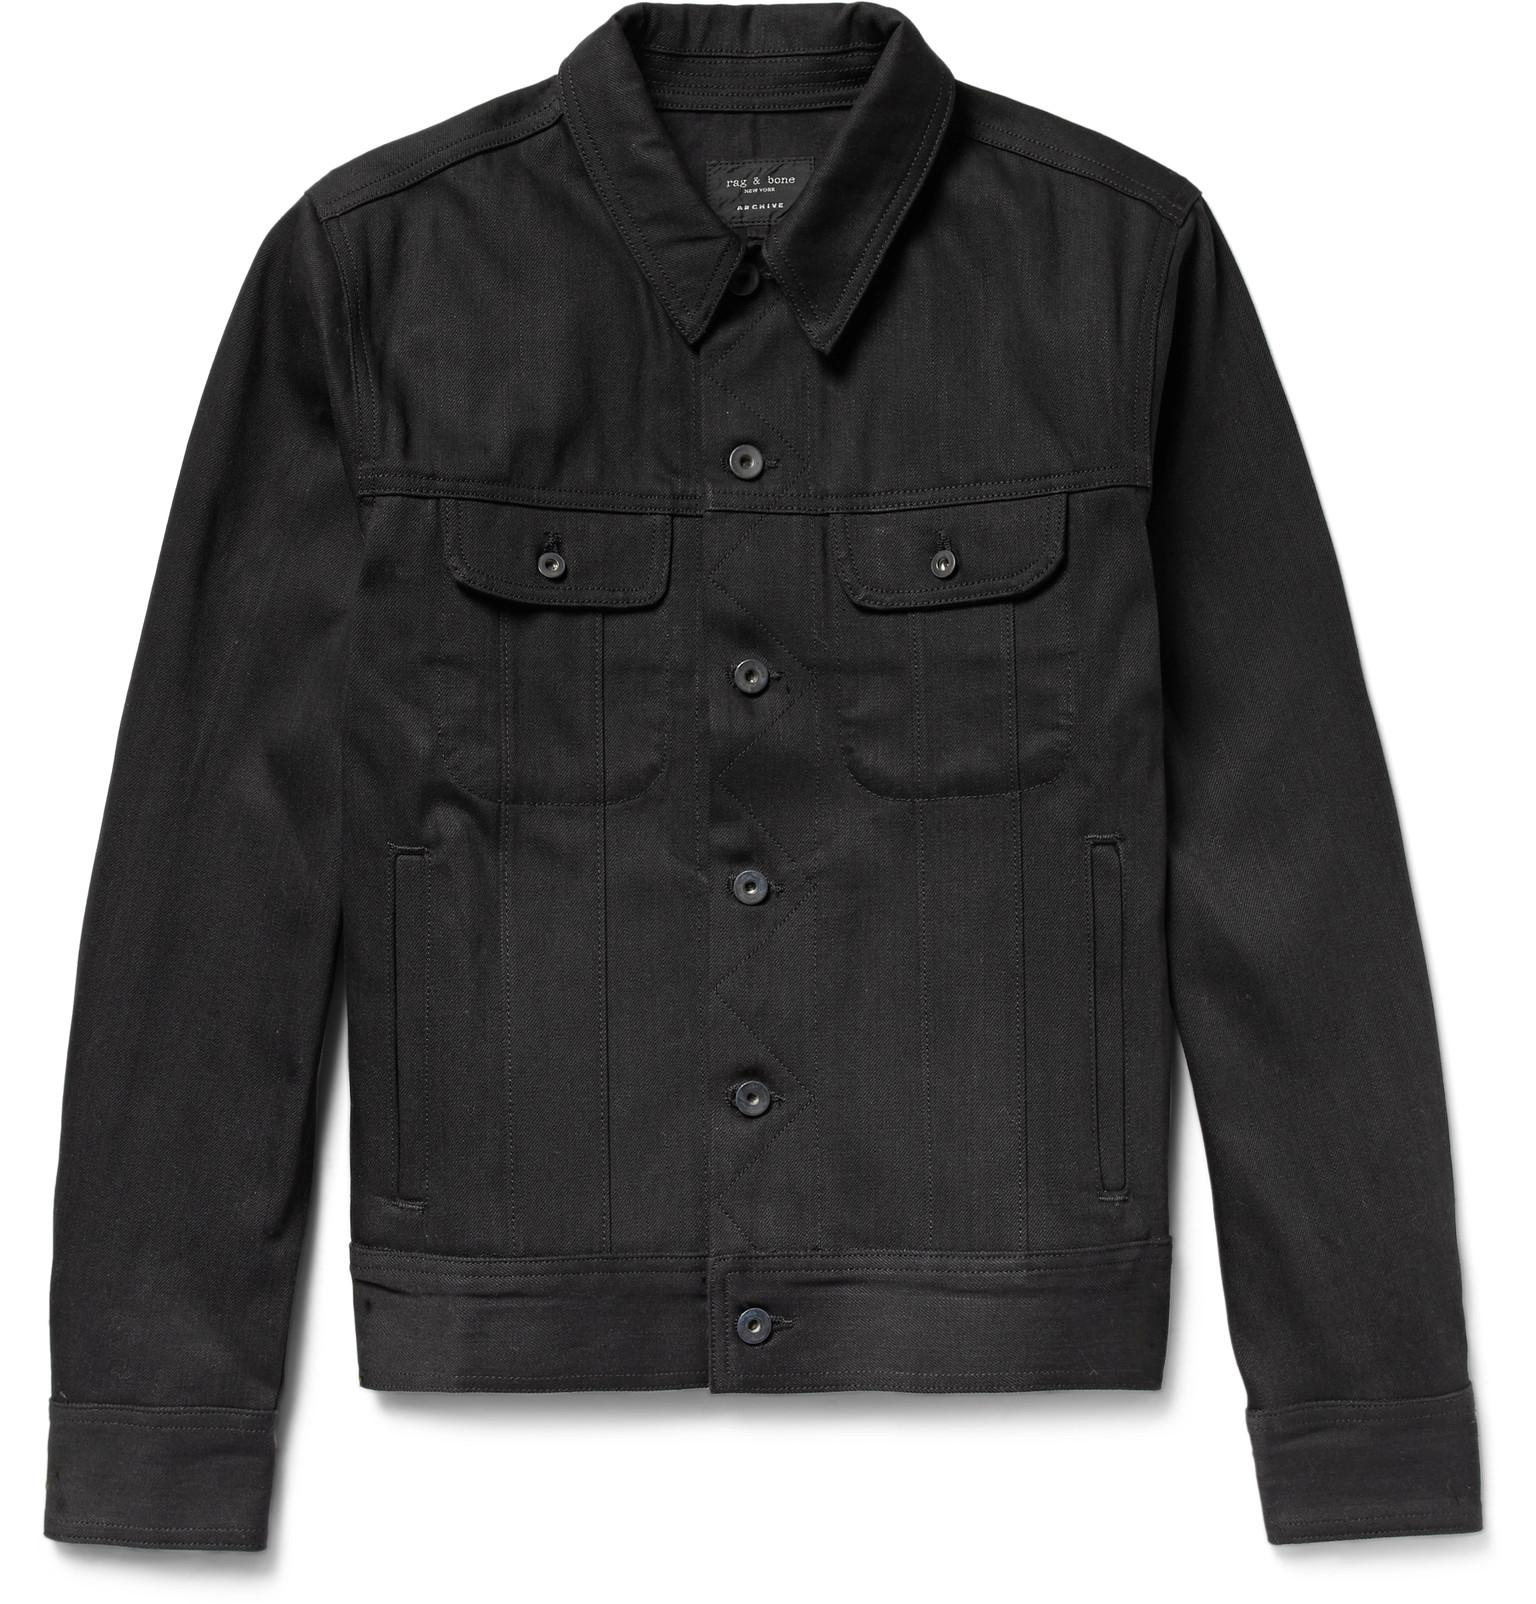 Rag & Bone Selvedge Denim Jacket in Black for Men - Lyst